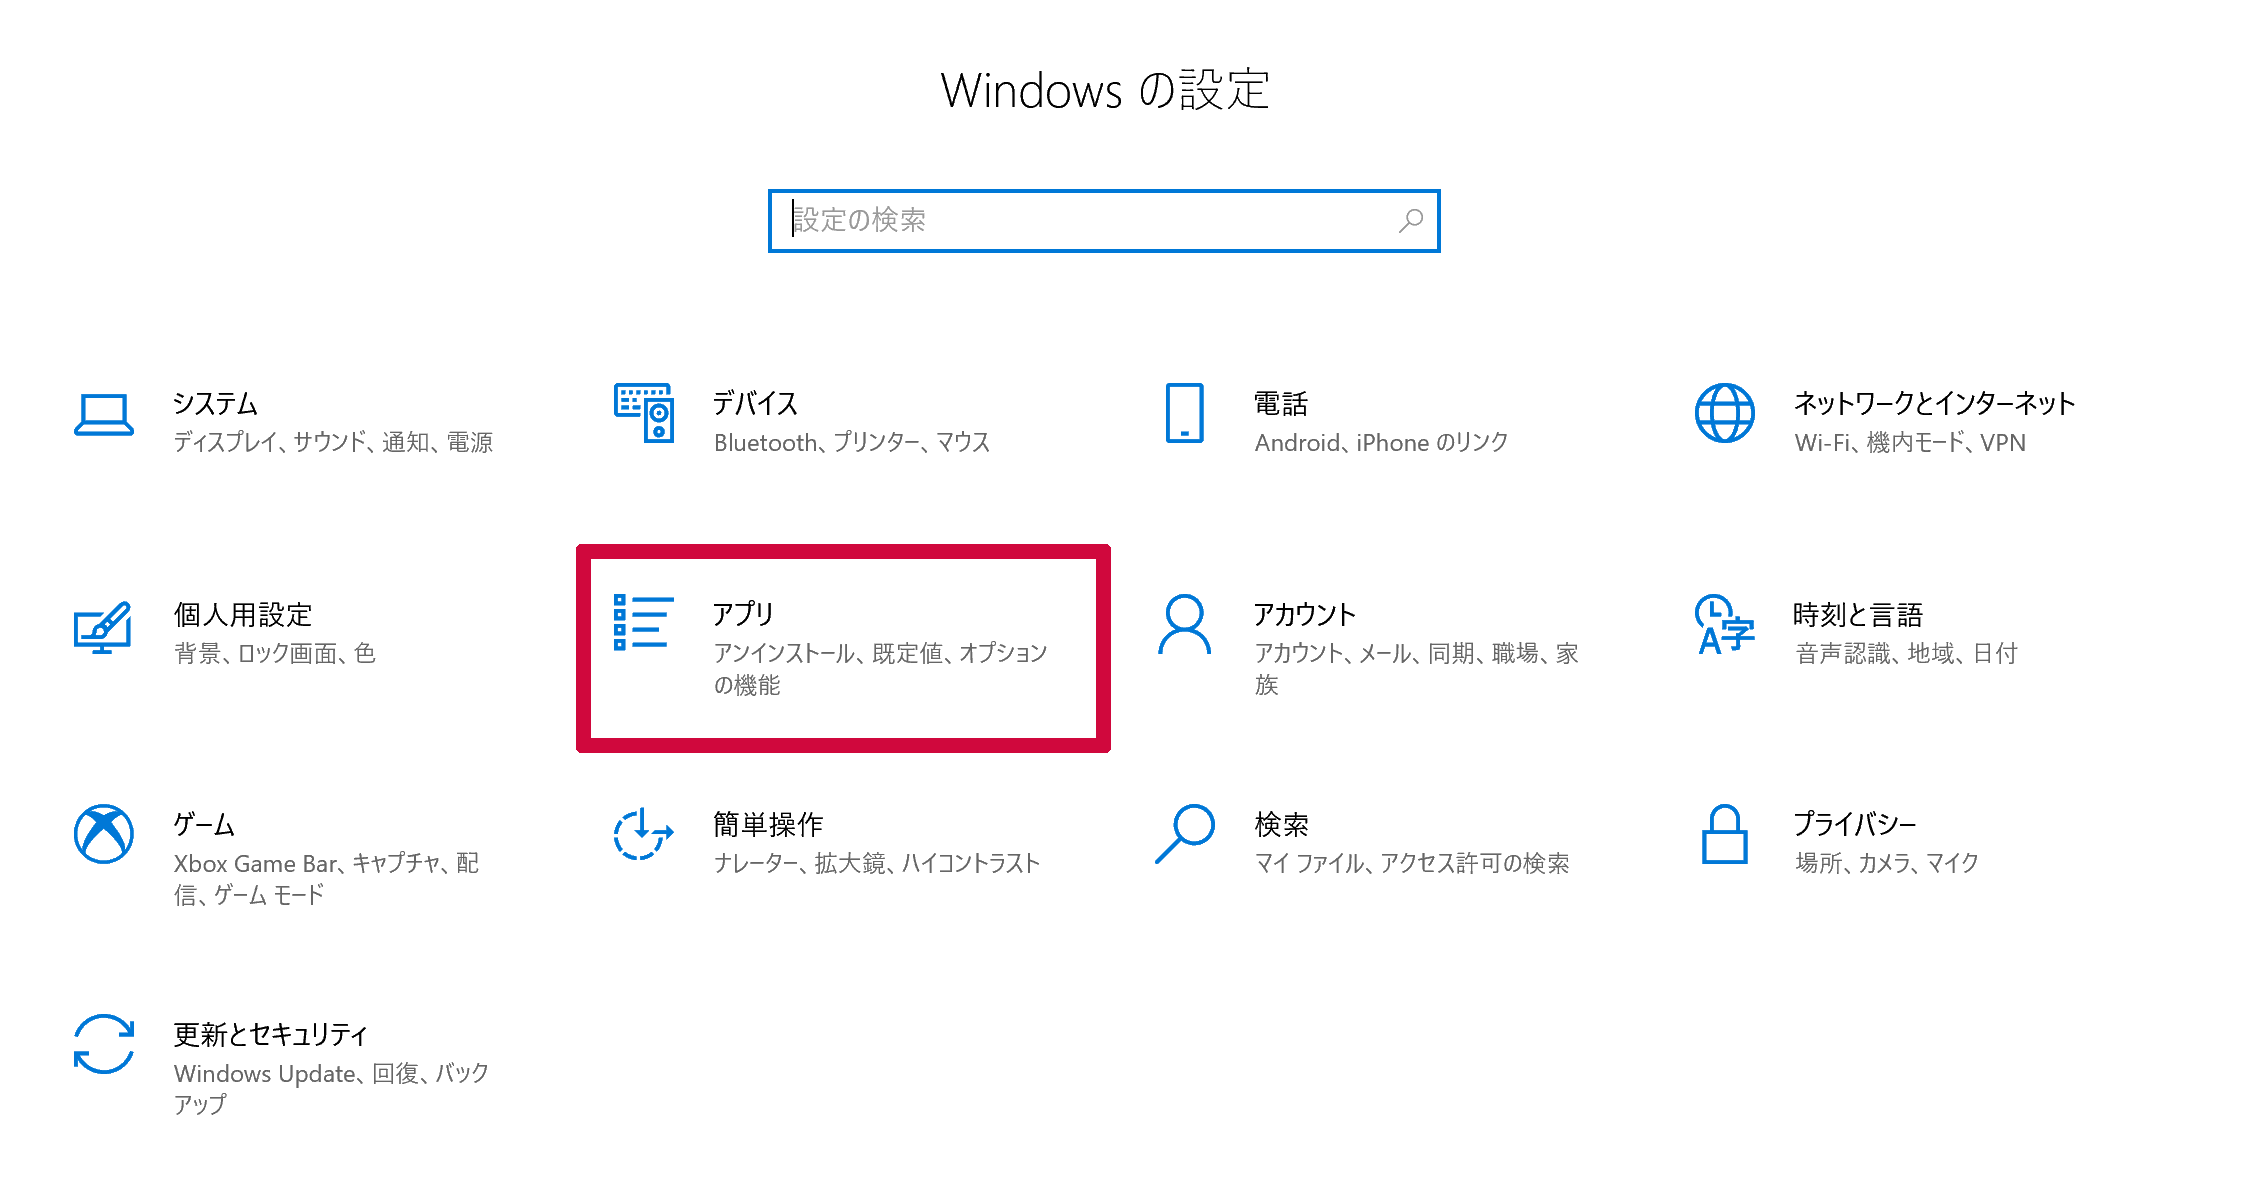 「Windowsの設定」が表示されますので、その中にある「アプリ」をクリックします。